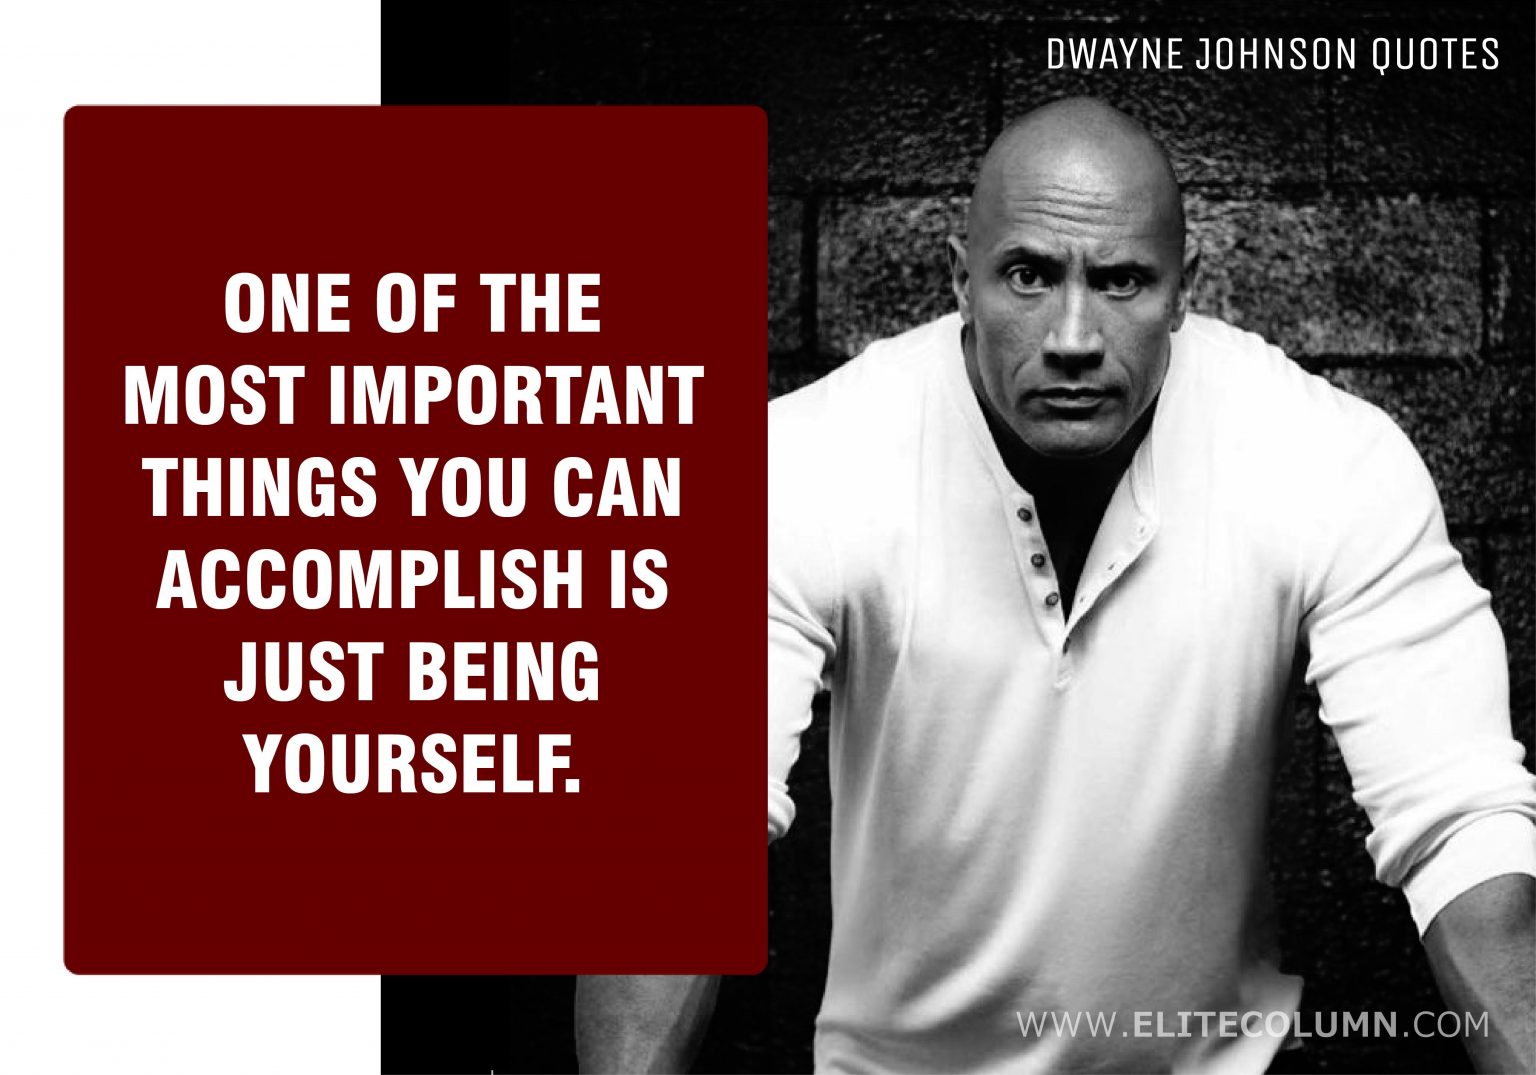 46 Dwayne Johnson Quotes That Will Motivate You (2021) | EliteColumn